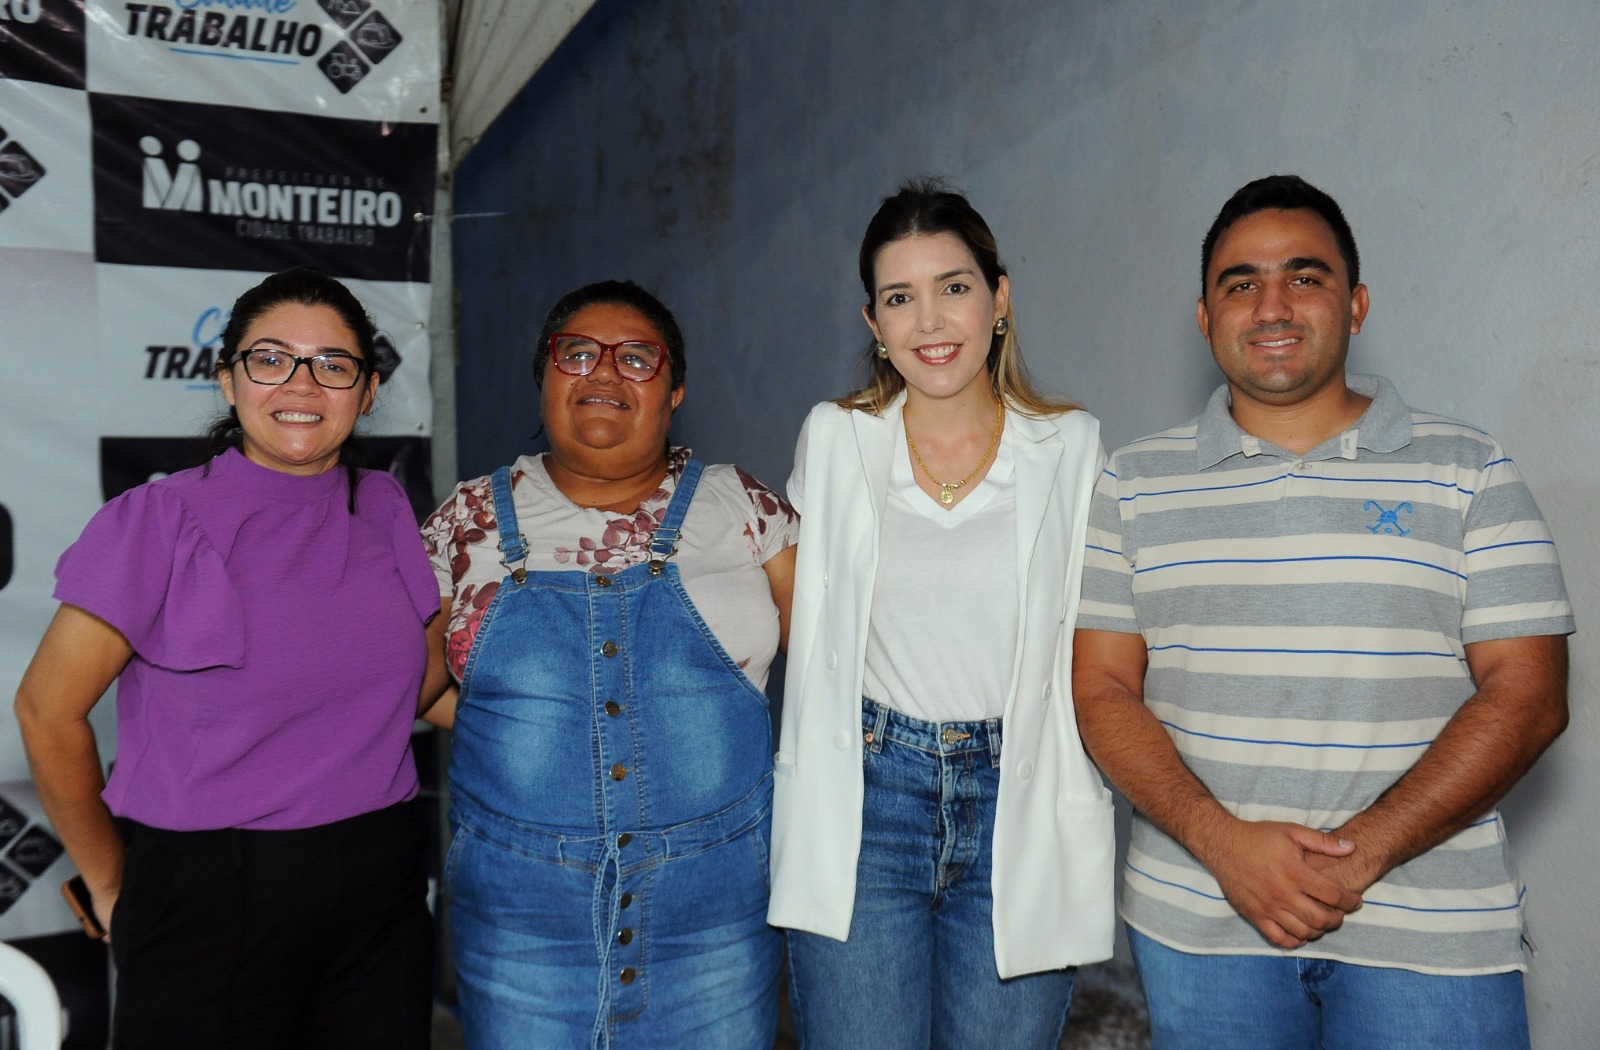 Pavimentacao-15 Cidade Trabalho: Prefeita Anna Lorena entrega mais uma rua pavimentada em Monteiro